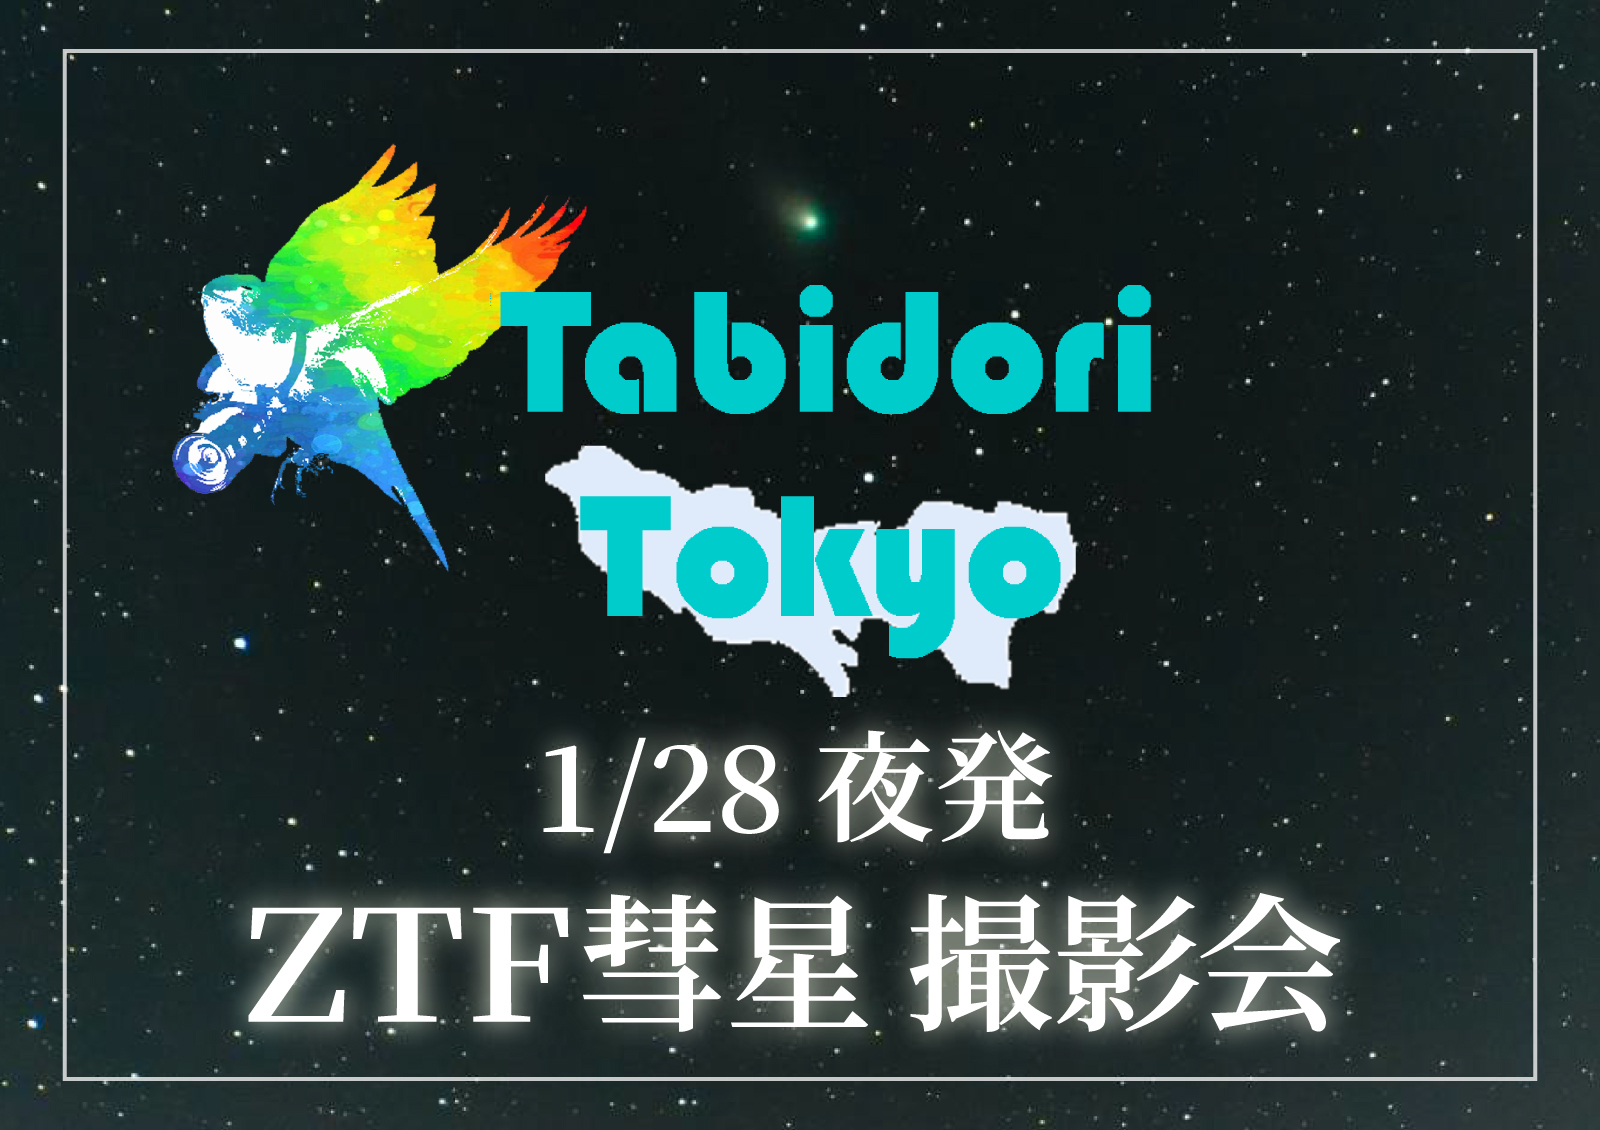 【旅撮-Tabidori- Tokyo】JR成田駅発着1/28夜～1/29朝 ZTF彗星撮影会【in千葉】